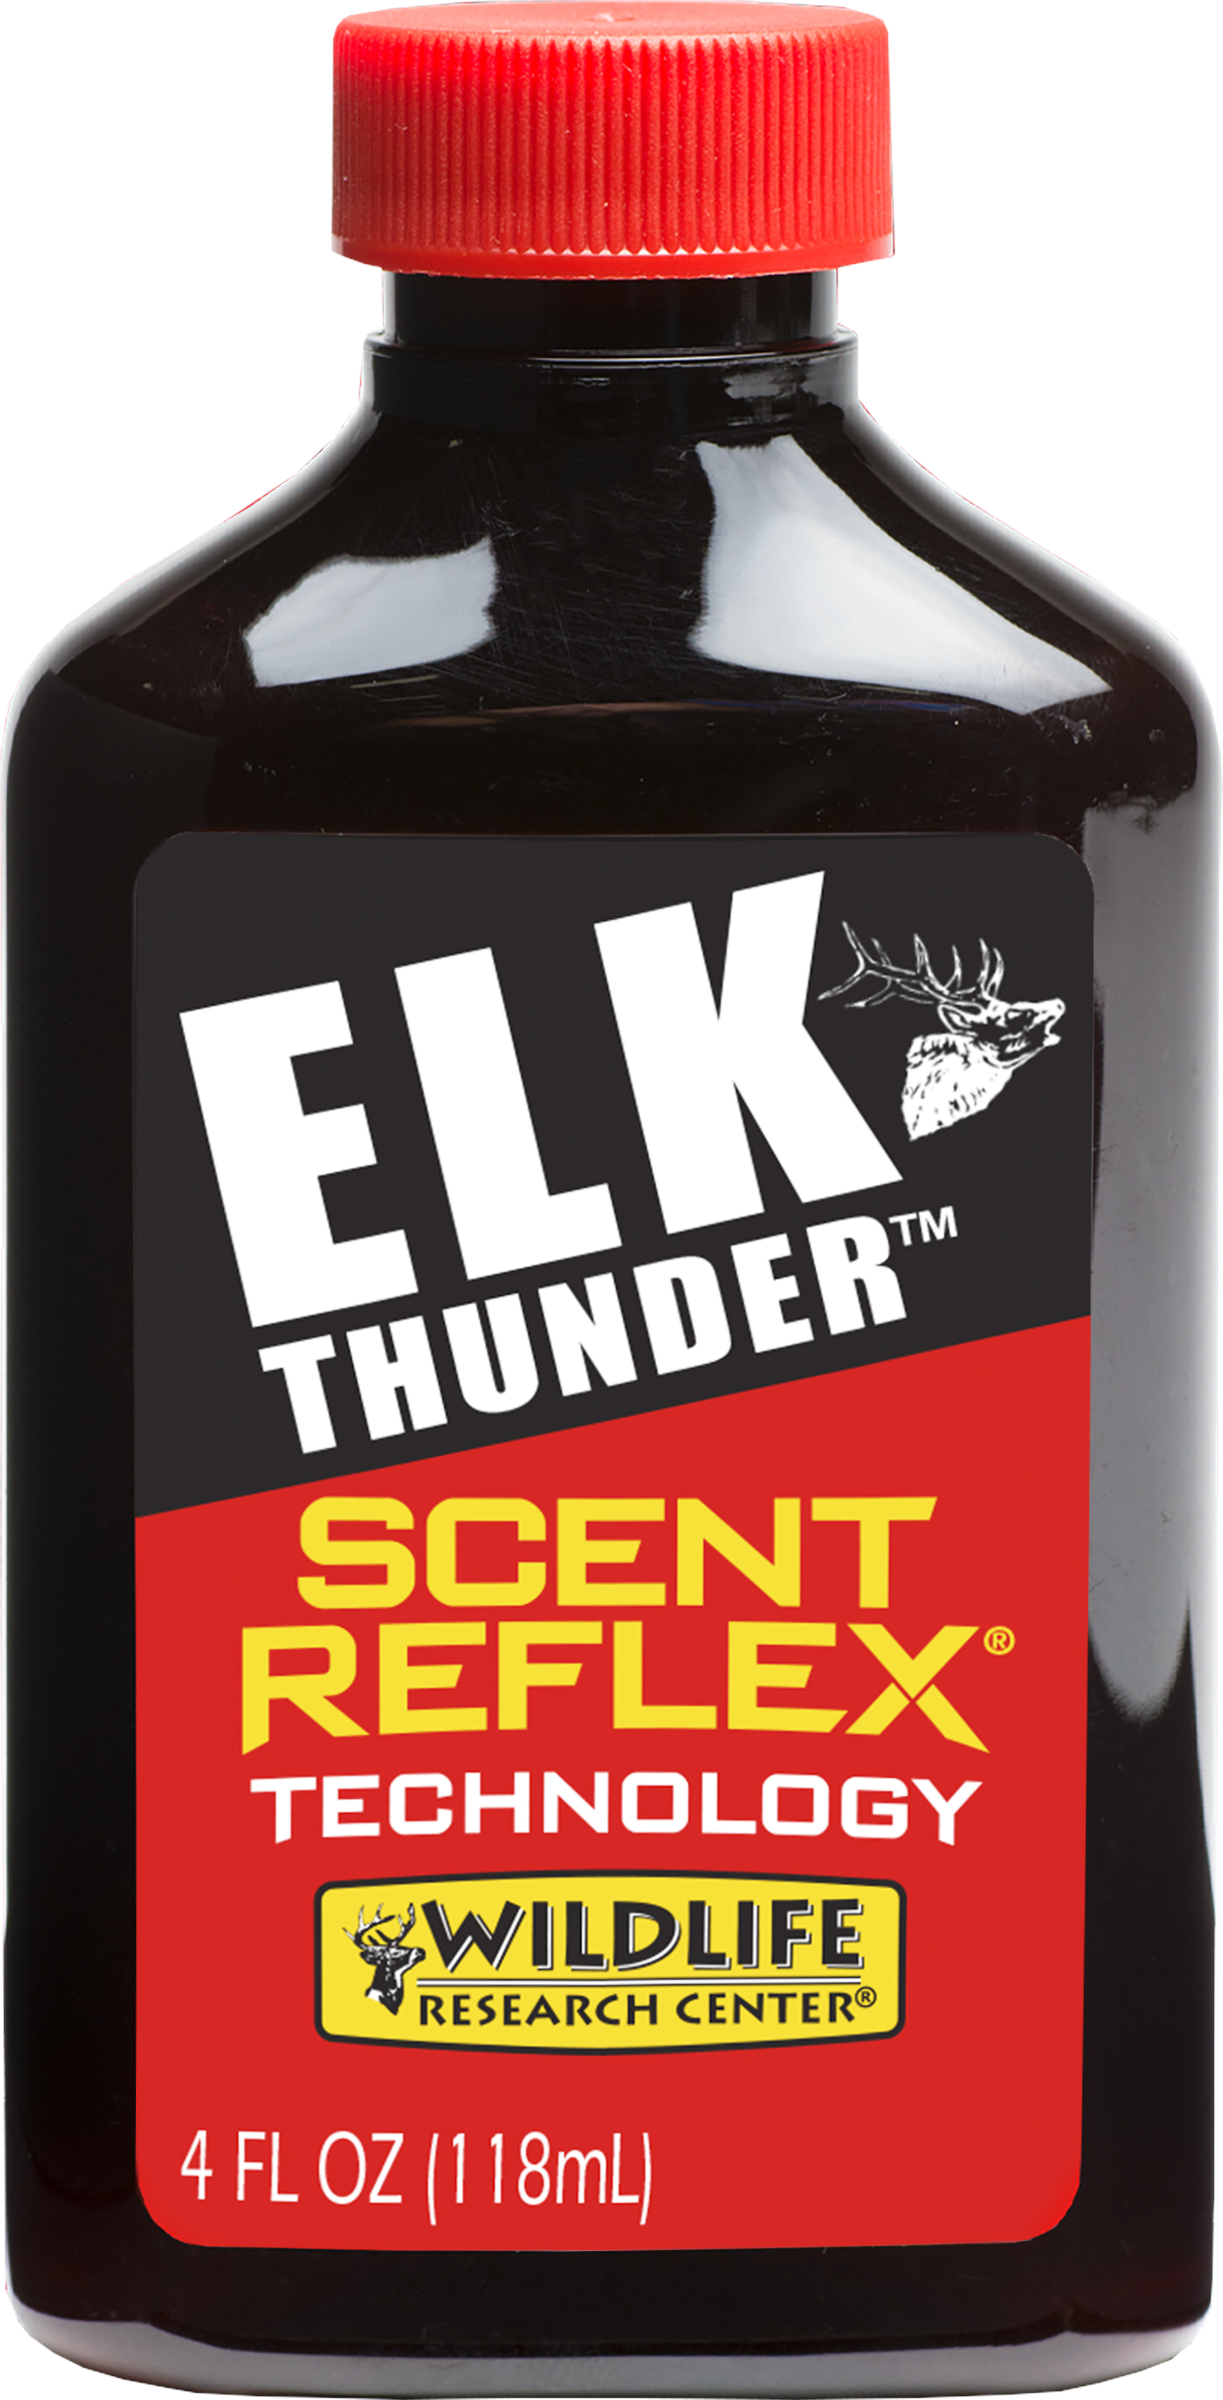 Elk Thunder™